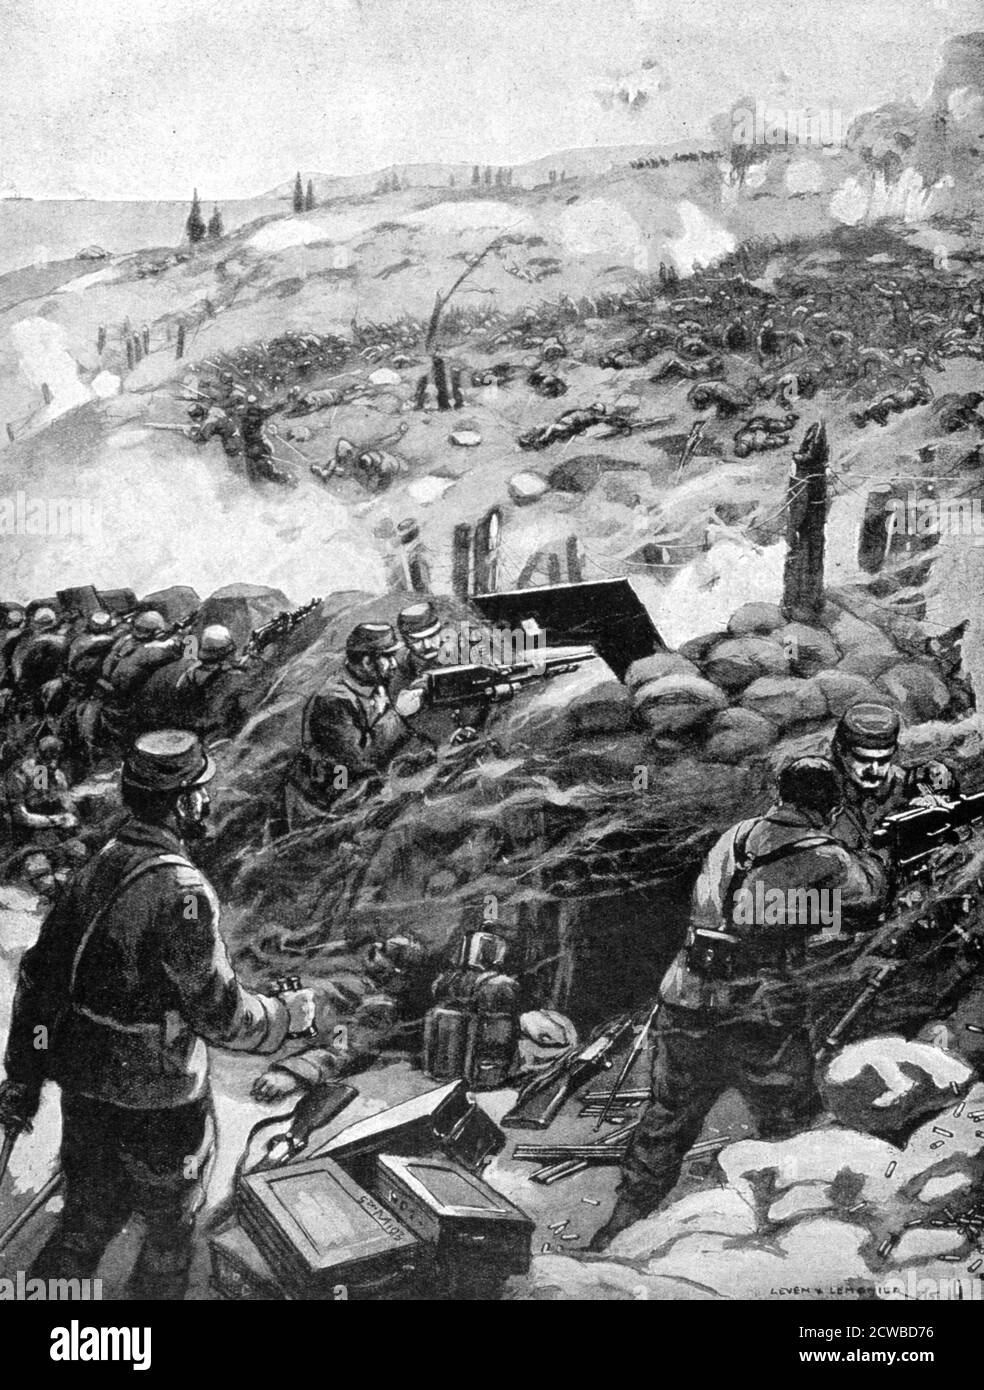 Combate en los Dardanelos, Achi Baba', 1915. Ataque turco contra posiciones aliadas en Achi Baba durante la campaña malogrado de Gallipoli. Una impresión de le Pays de France, 5 de agosto de 1915. El fotógrafo es desconocido. Foto de stock